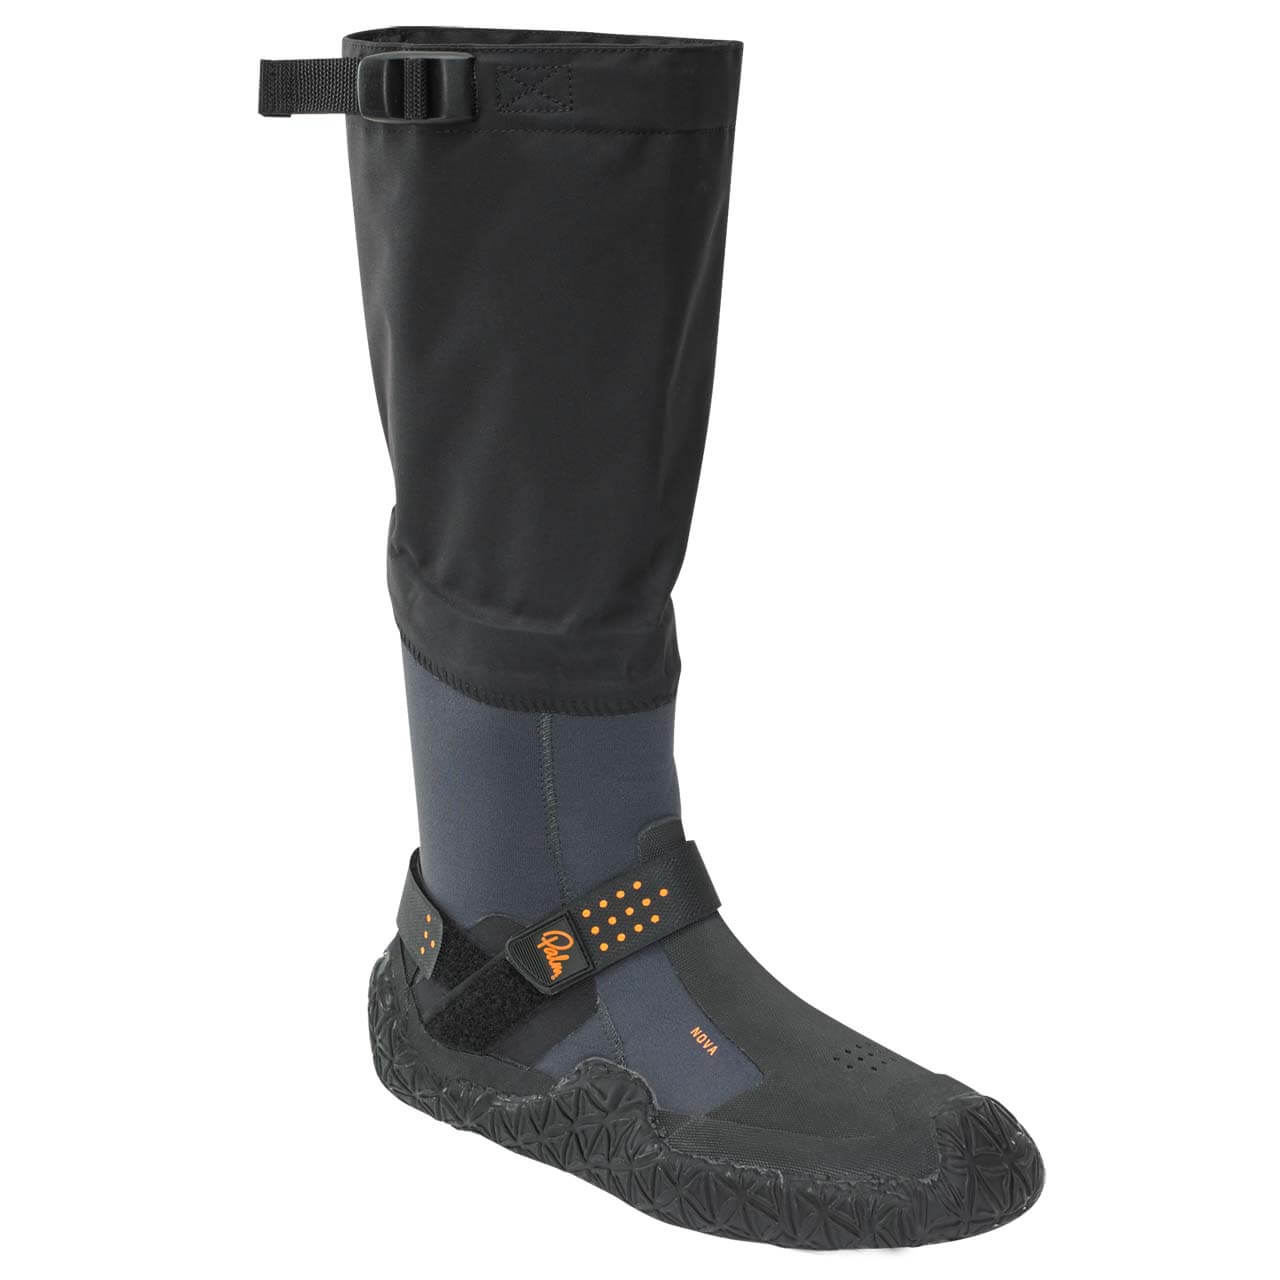 Palm Nova Boots - Jet Grey, UK 10